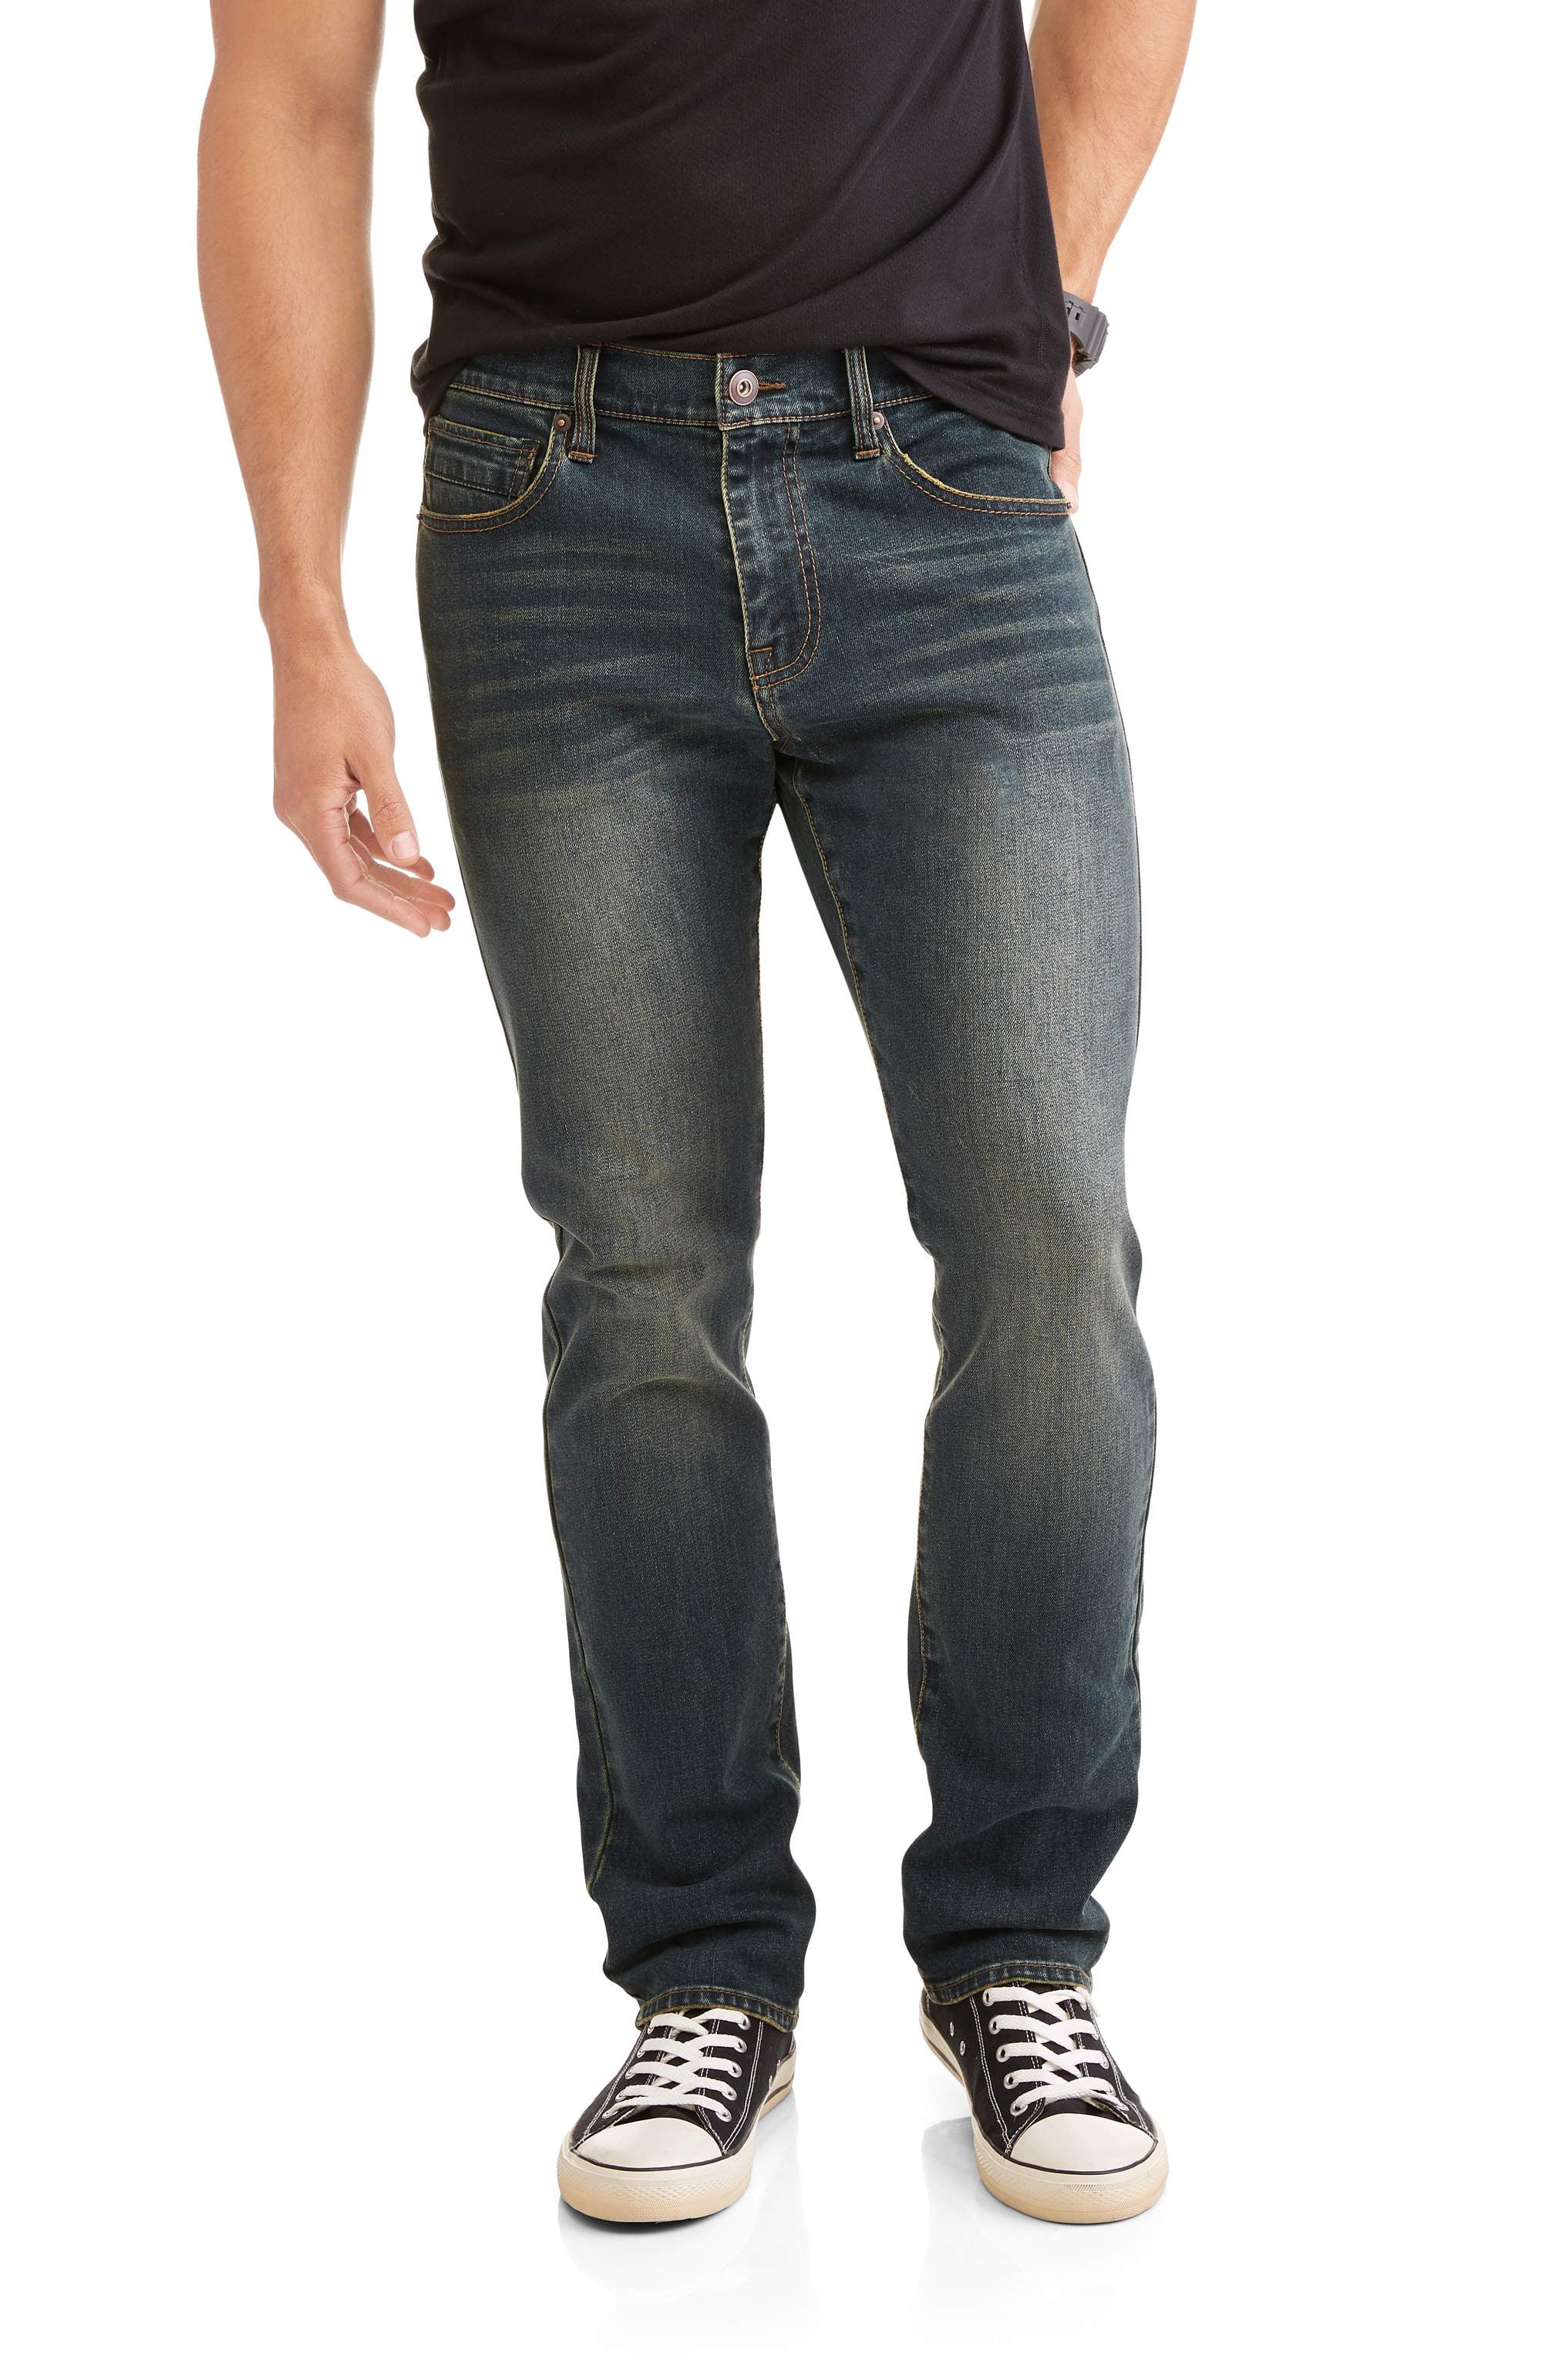 Lazer - Lazer Men's Slim Straight Fit Jeans with Stretch - Walmart.com